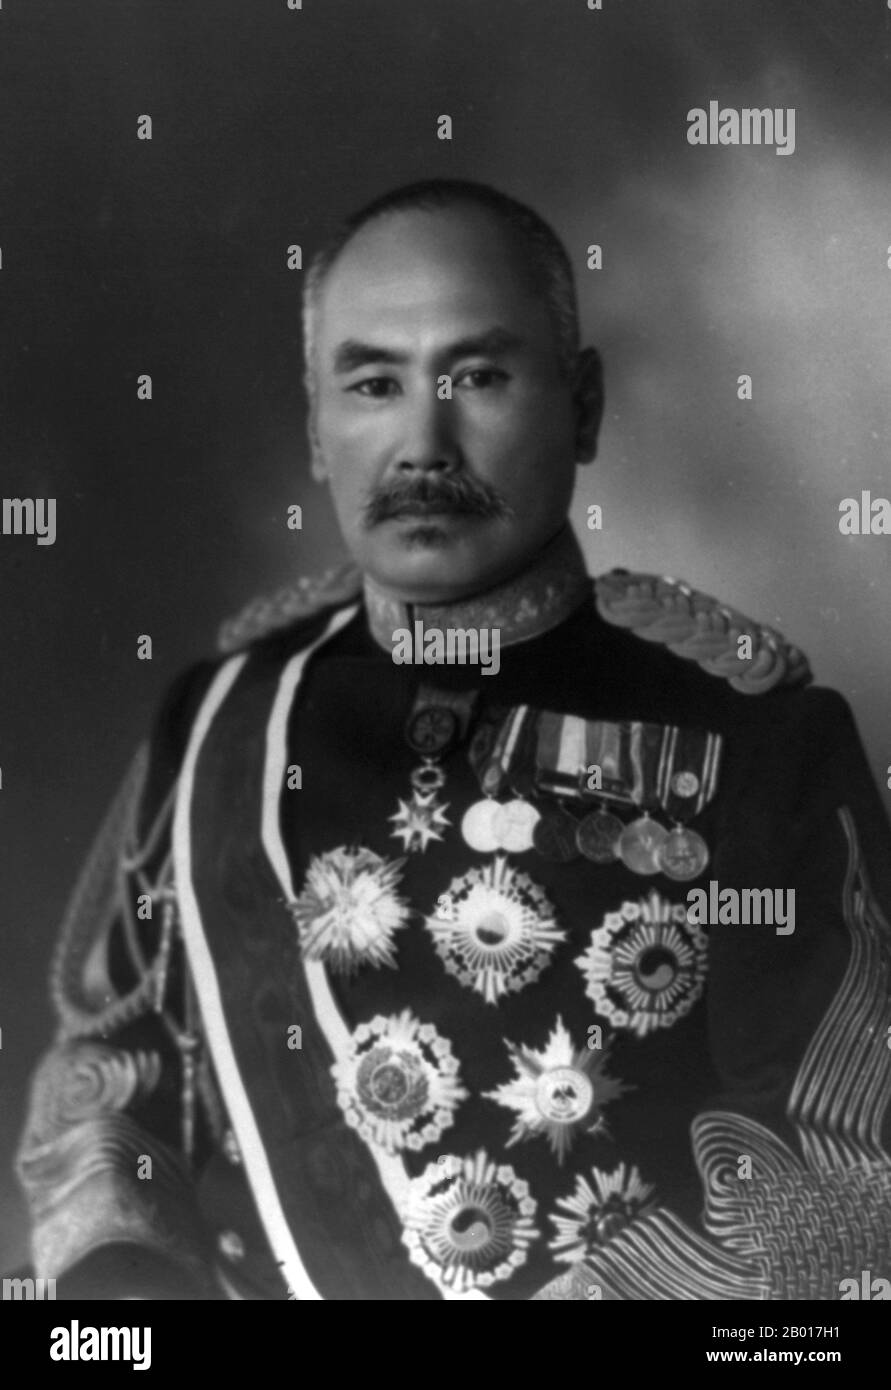 Giappone: Conte Hasegawa Yoshimichi (1 ottobre 1850 - 27 gennaio 1924), Governatore Generale della Corea (r. 1916-1919), all'inizio del 20th secolo. Il conte Hasegawa Yoshimichi fu un maresciallo di campo nell'esercito imperiale giapponese e servì come governatore generale giapponese della Corea dal 1916 al 1919. Le sue decorazioni comprendevano l'Ordine del Kite d'Oro (classe 1st) e l'Ordine del Chrysanthemum. Fu figlio di un maestro di scherma samurai e combatté per le forze di Choshu durante la guerra di Boshin nel 1868. Si unì all'esercito imperiale giapponese appena formato nel 1871, inizialmente come capitano. Foto Stock